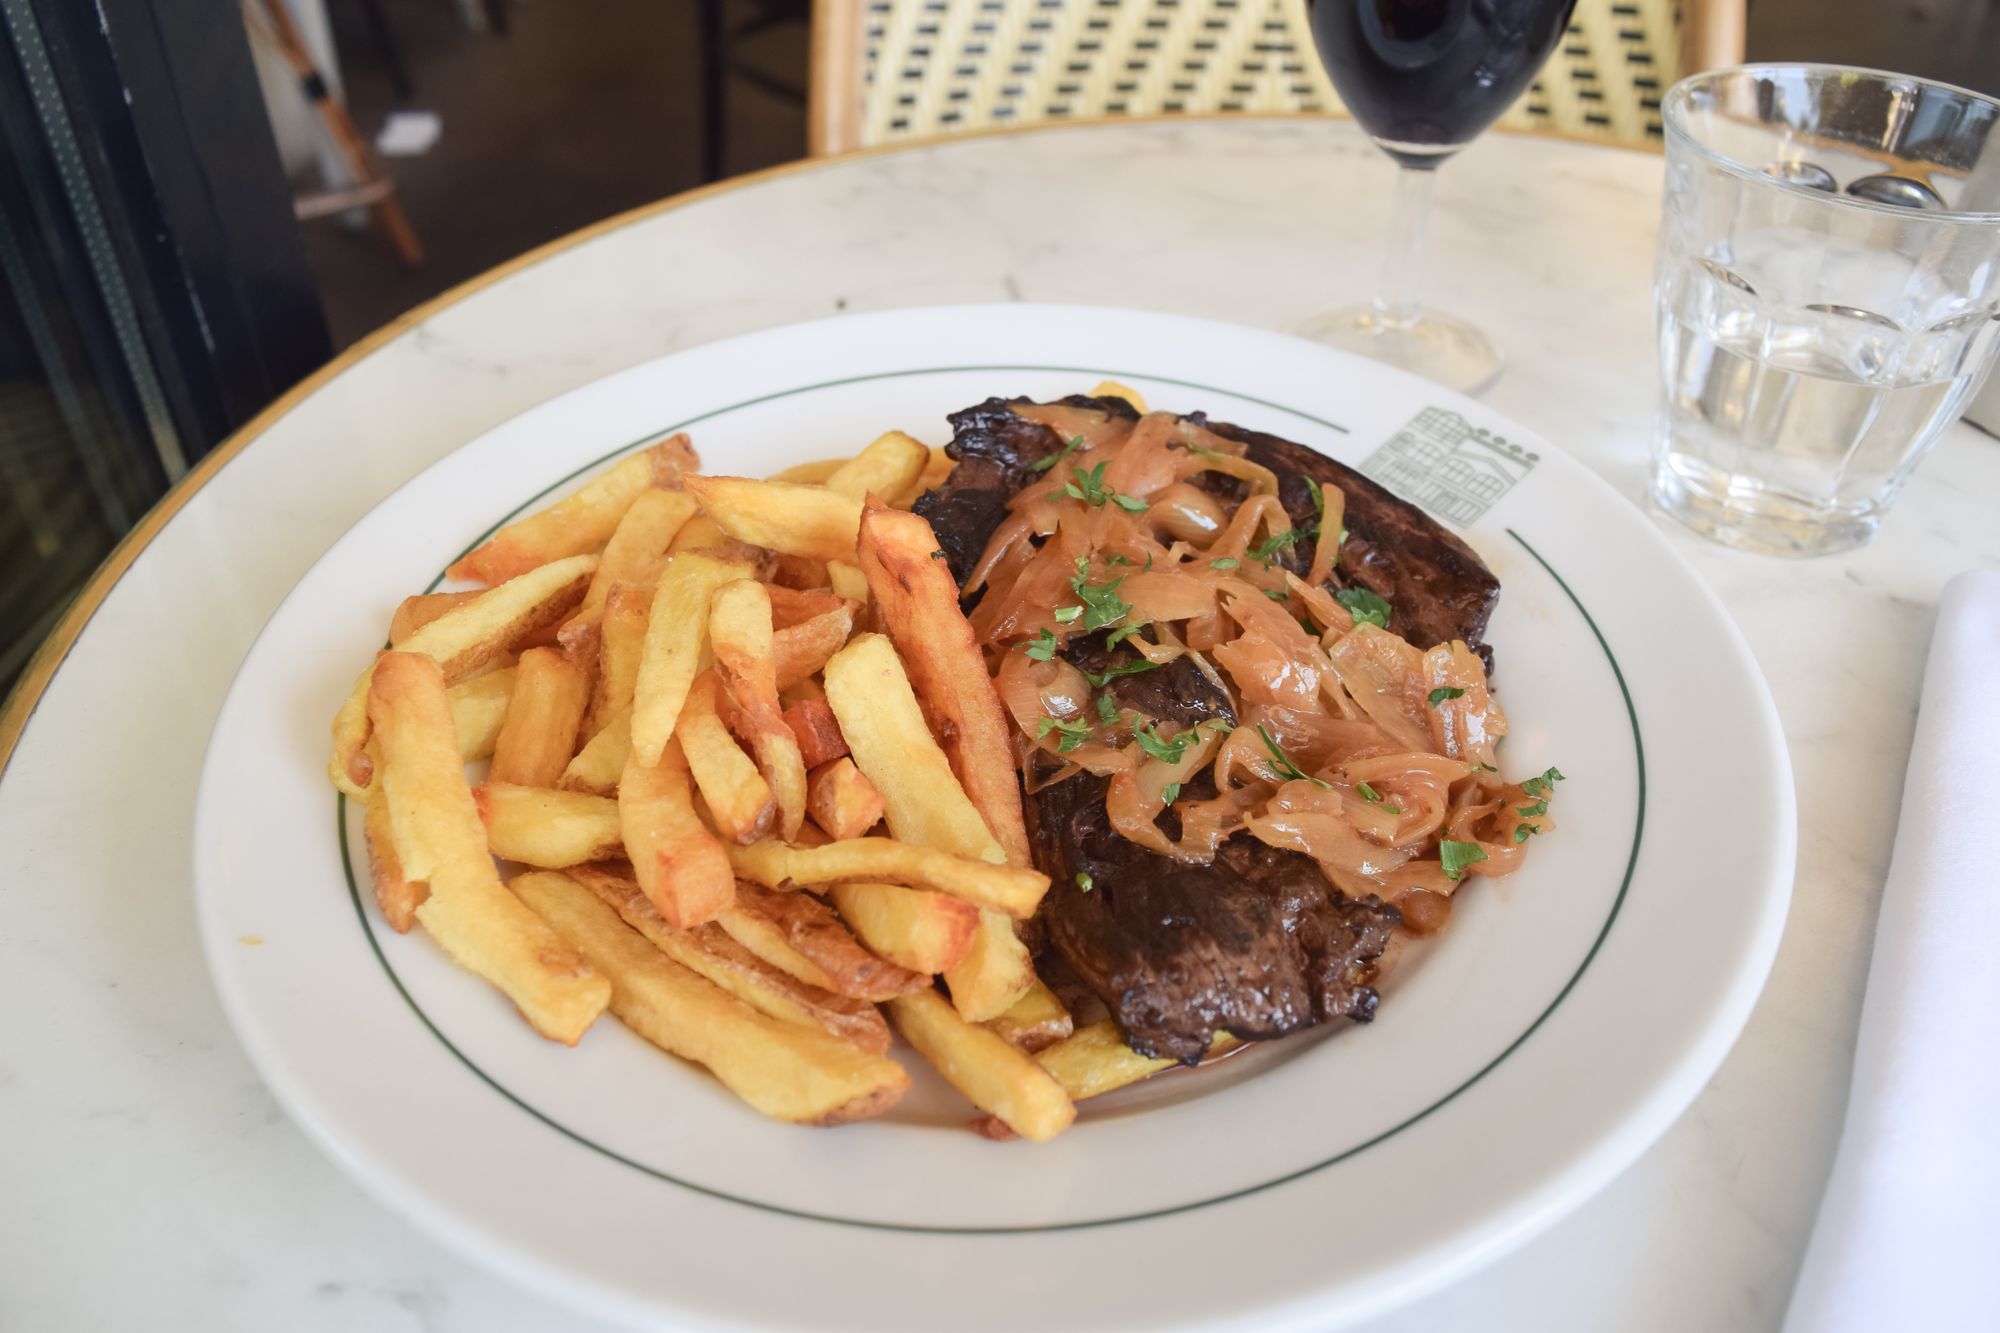 Steak Frites at Brasserie Barbes Restaurant, Paris